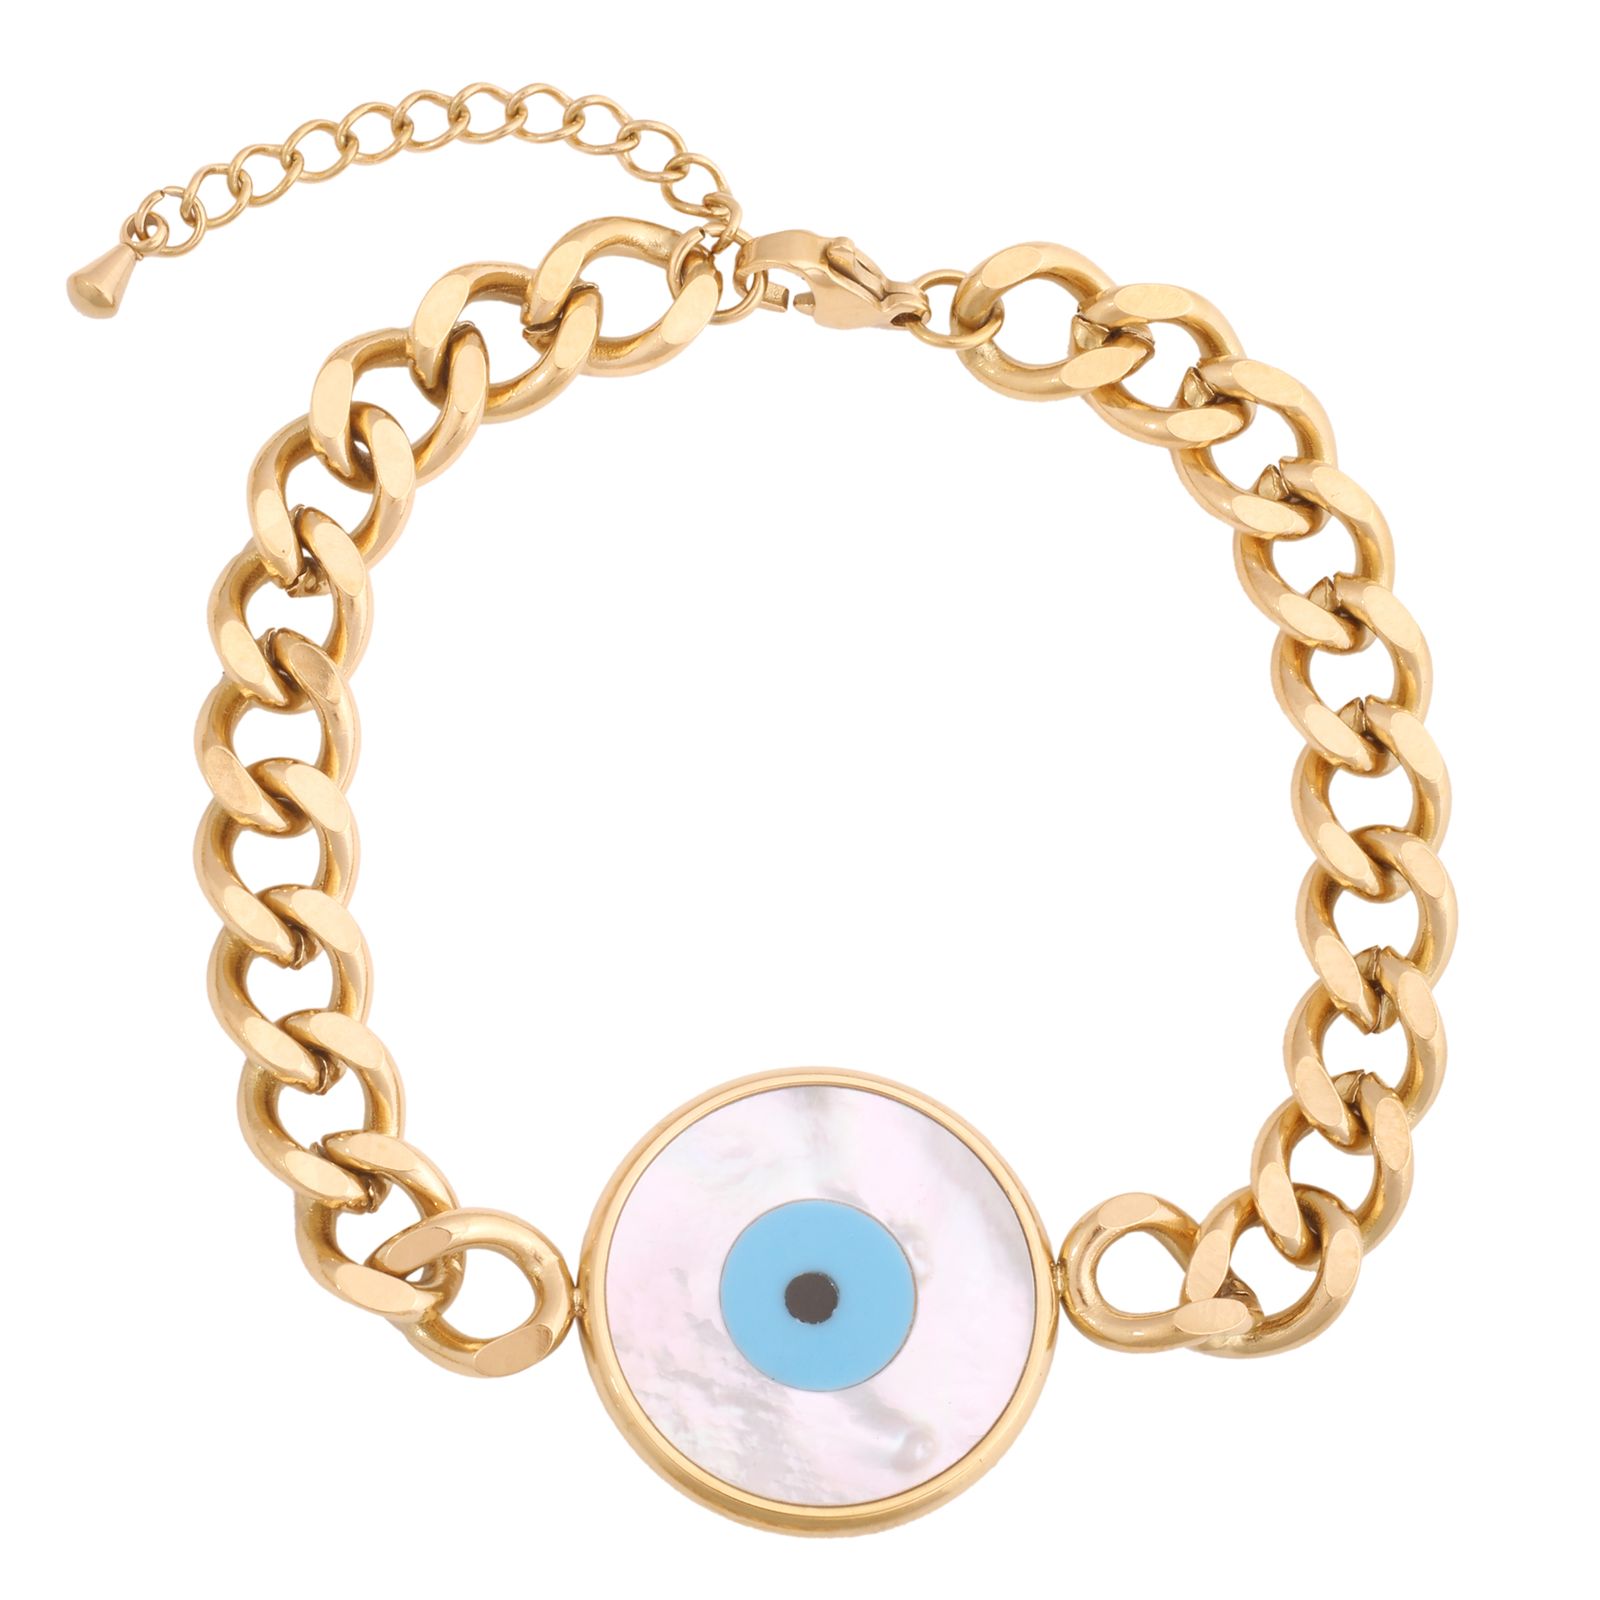 دستبند زنانه استینلس استیل مدل چشم نظر کد B3250 -  - 1